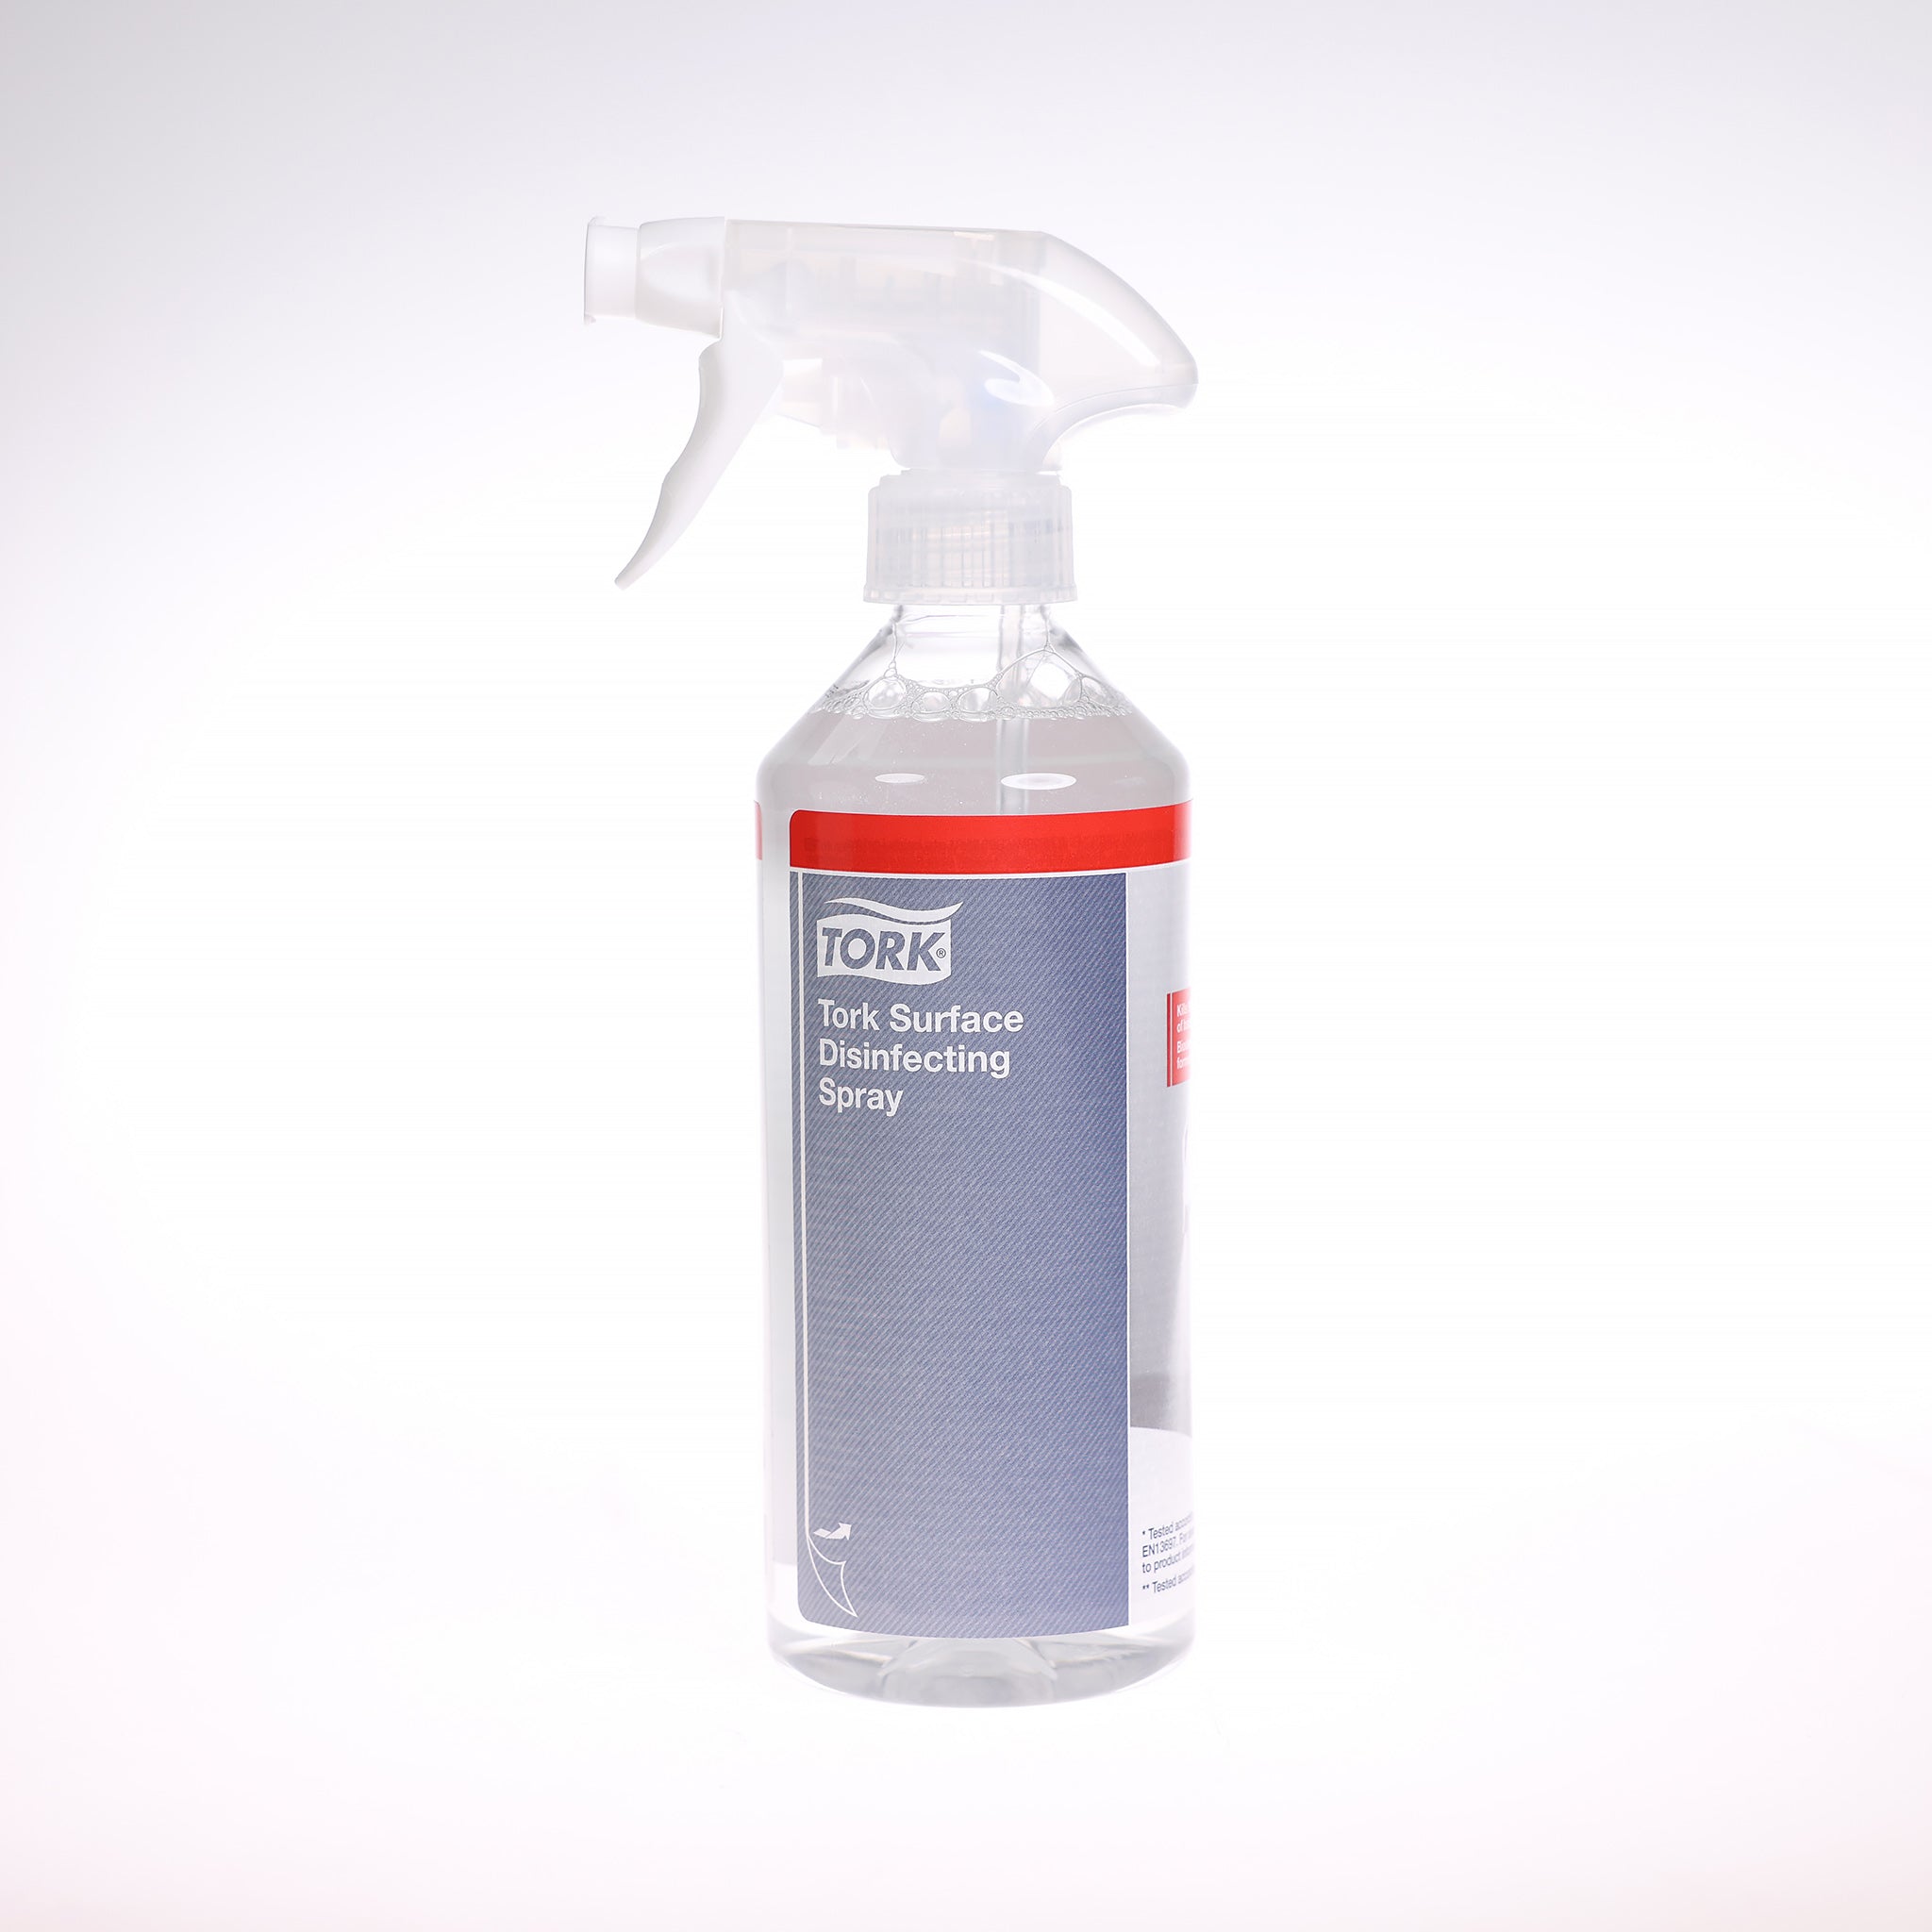 Effektive desinfektionsspray Tork Surface, 500 ml. egner sig til overflader og beskytter dig selv og andre mod bakterier, vira m.m.